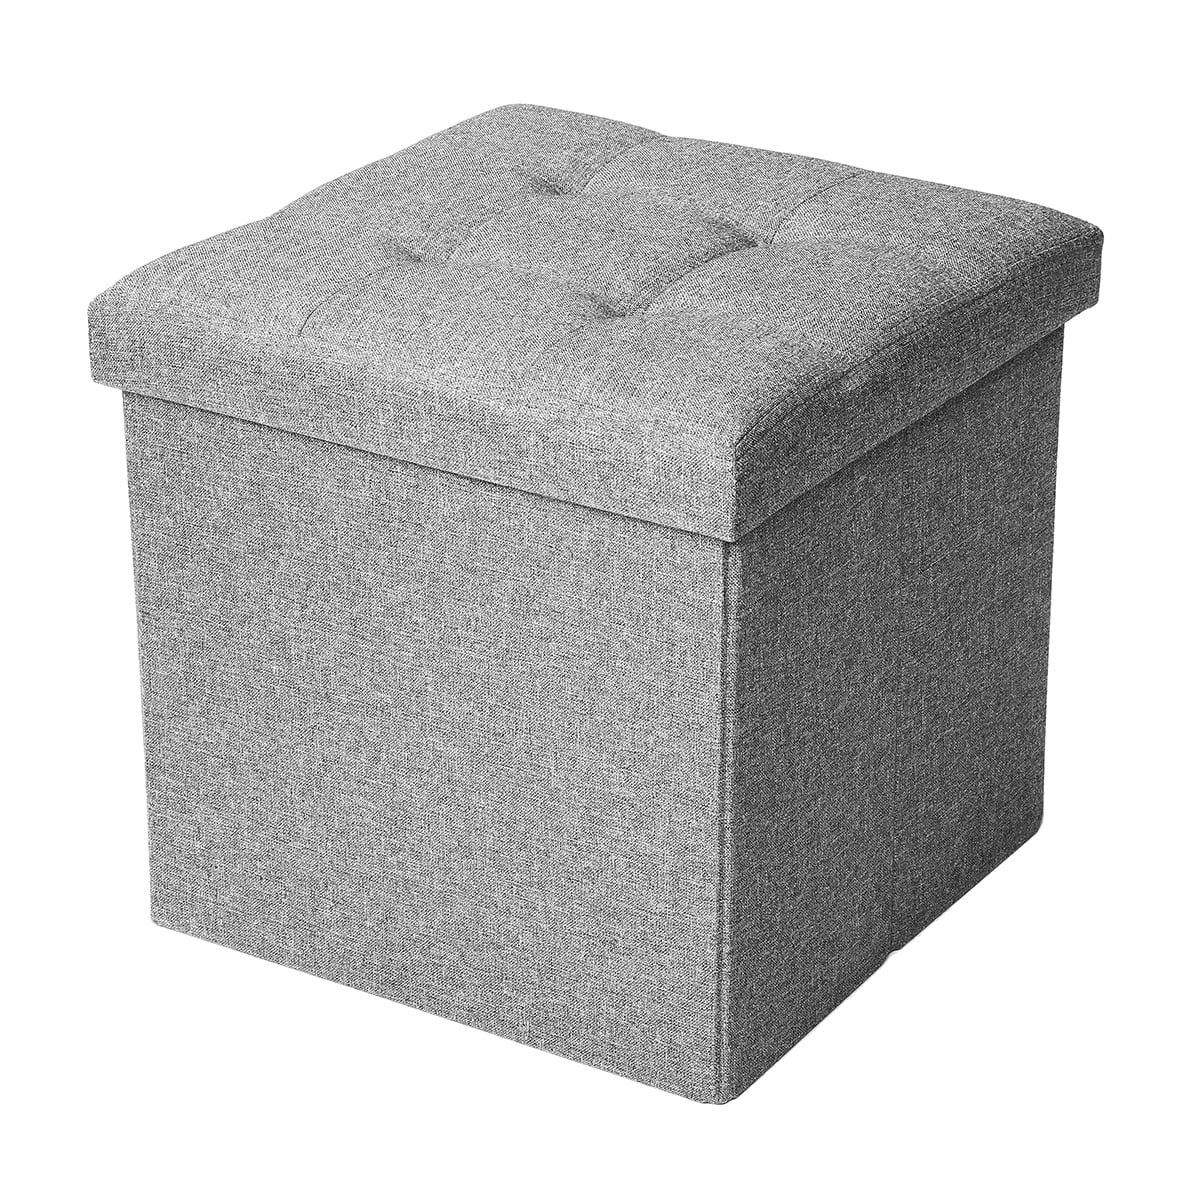 New Modern Single Foldable Storage Pouffe Foot Stool Cube Seat Ottoman Toy Box 